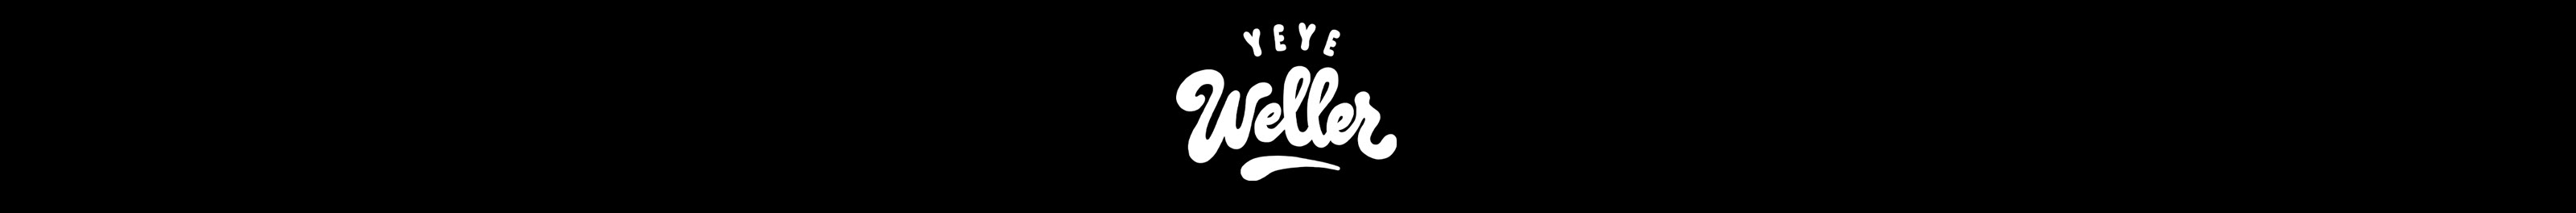 Yeye Weller's profile banner